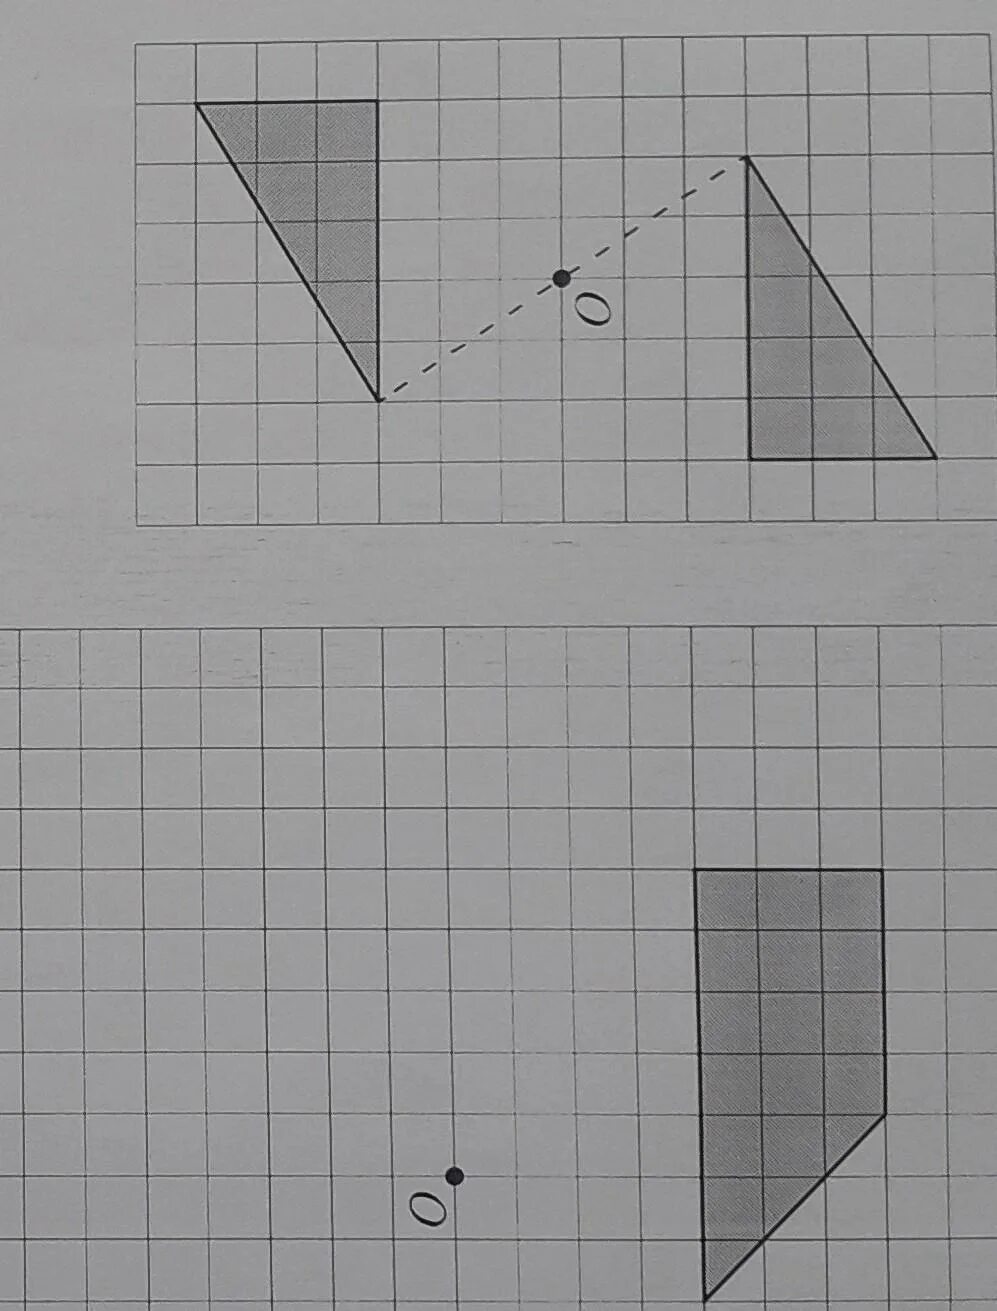 Фигуры симметричные относительно точки о на рисунке. Симметричные фигуры. Рисование фигур симметричных относительно точки. Симметричные фигуры к точка 0. Нарисуйте фигуру симметричную данной относительно точки о.